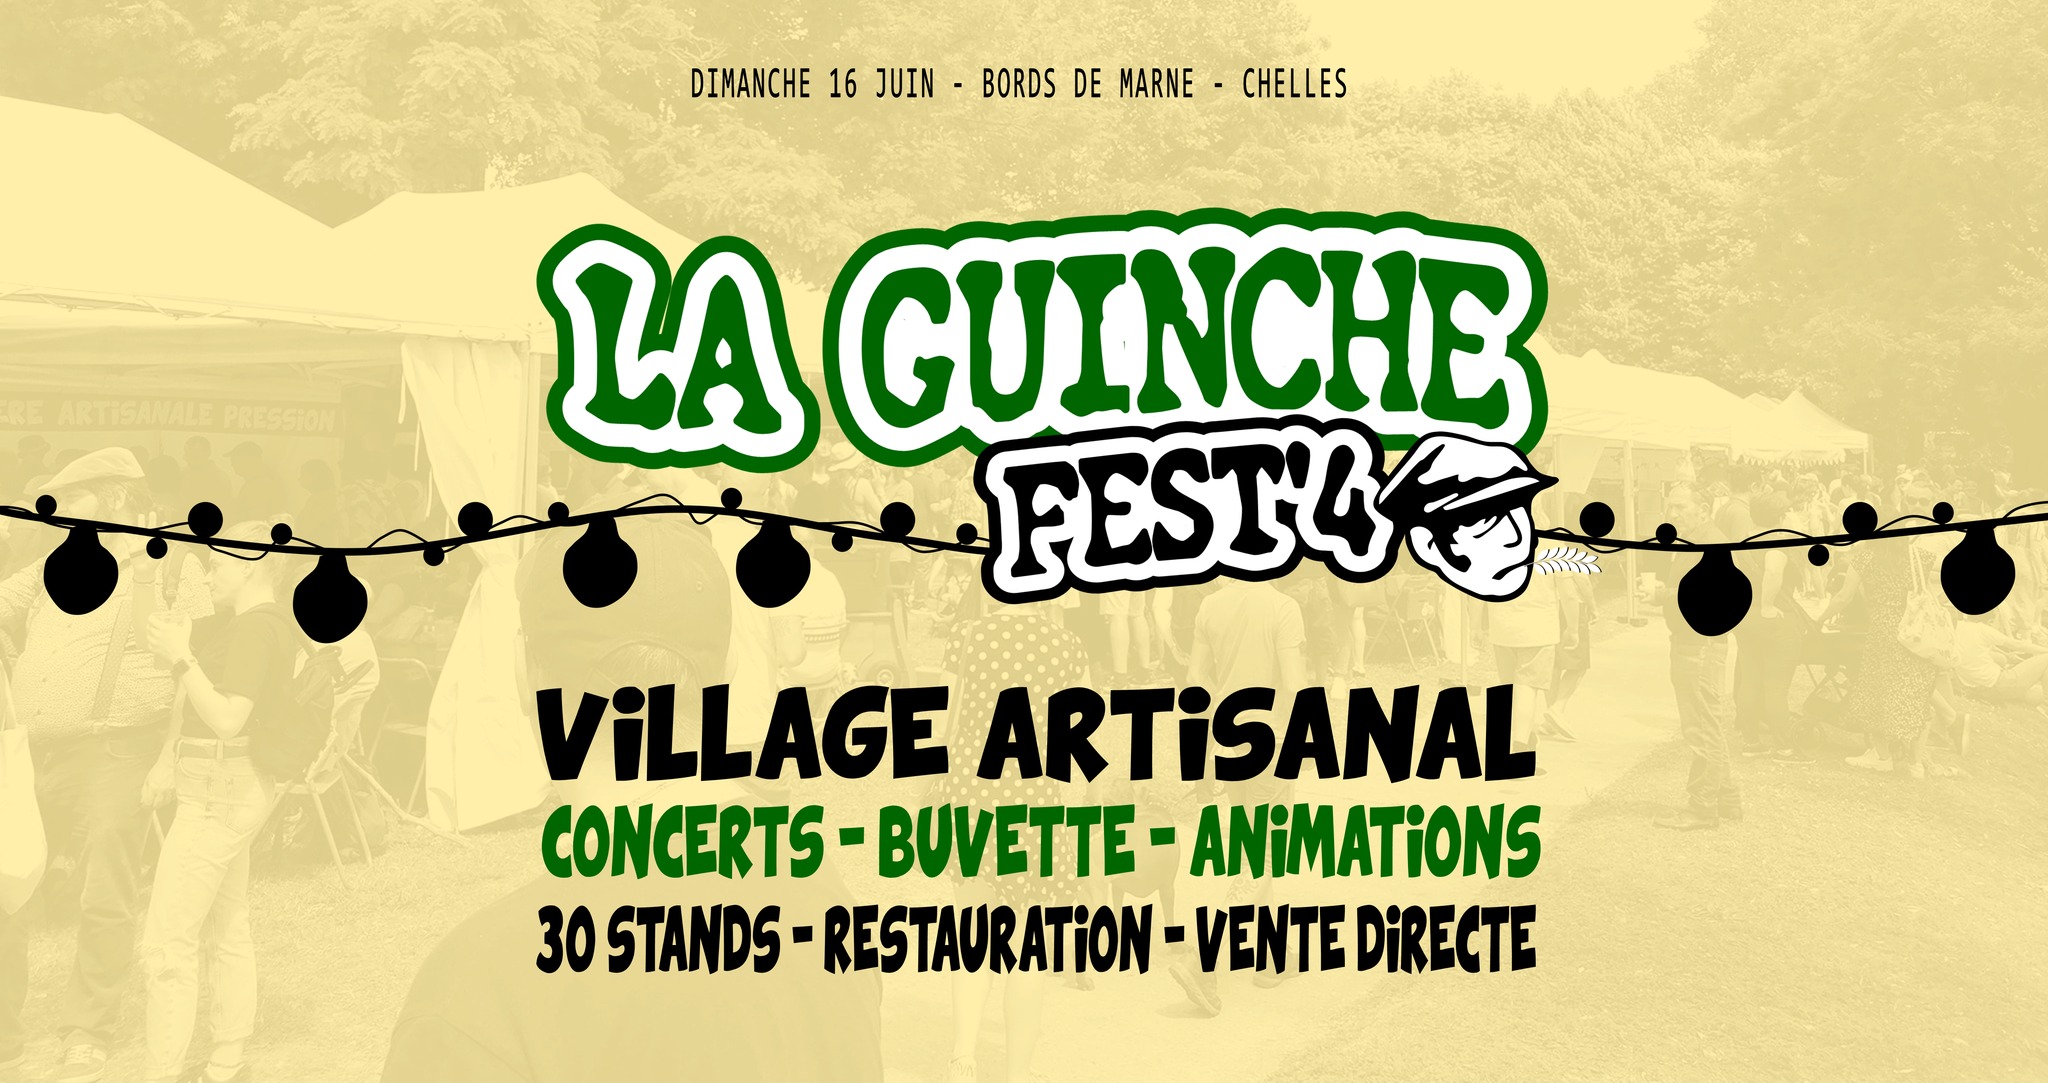 Guinche Fest